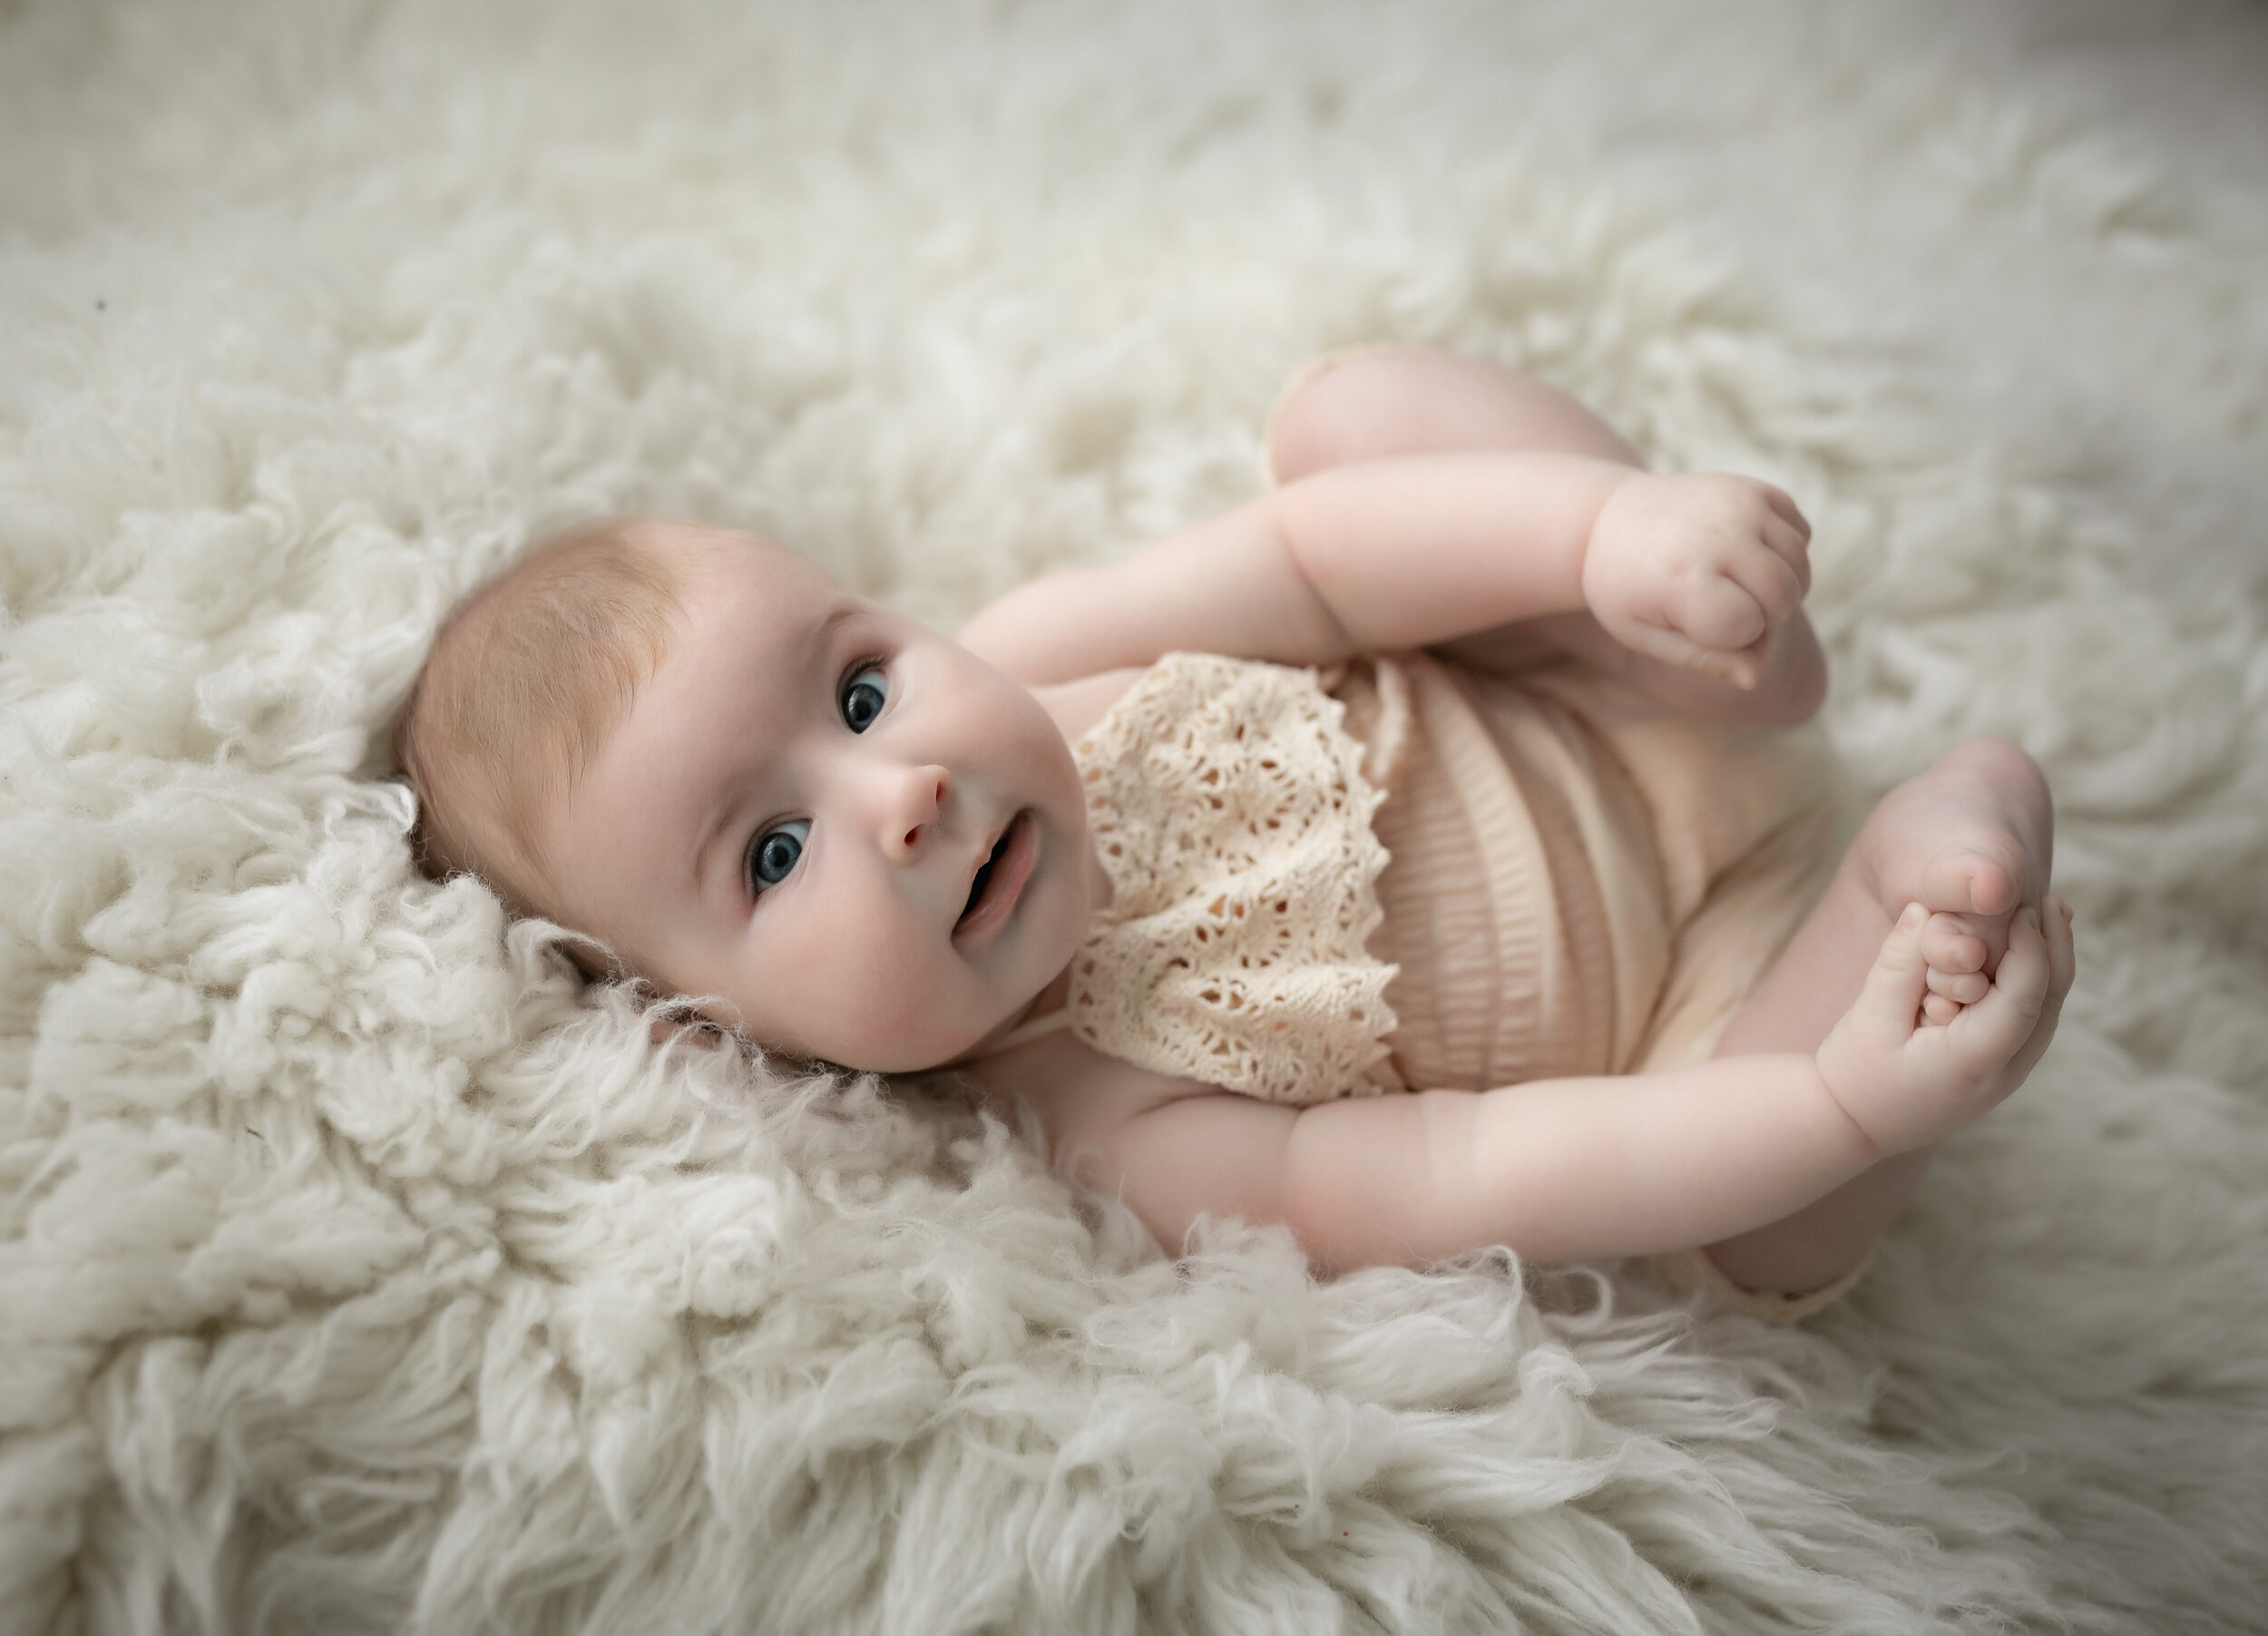 Cheshire baby photographer